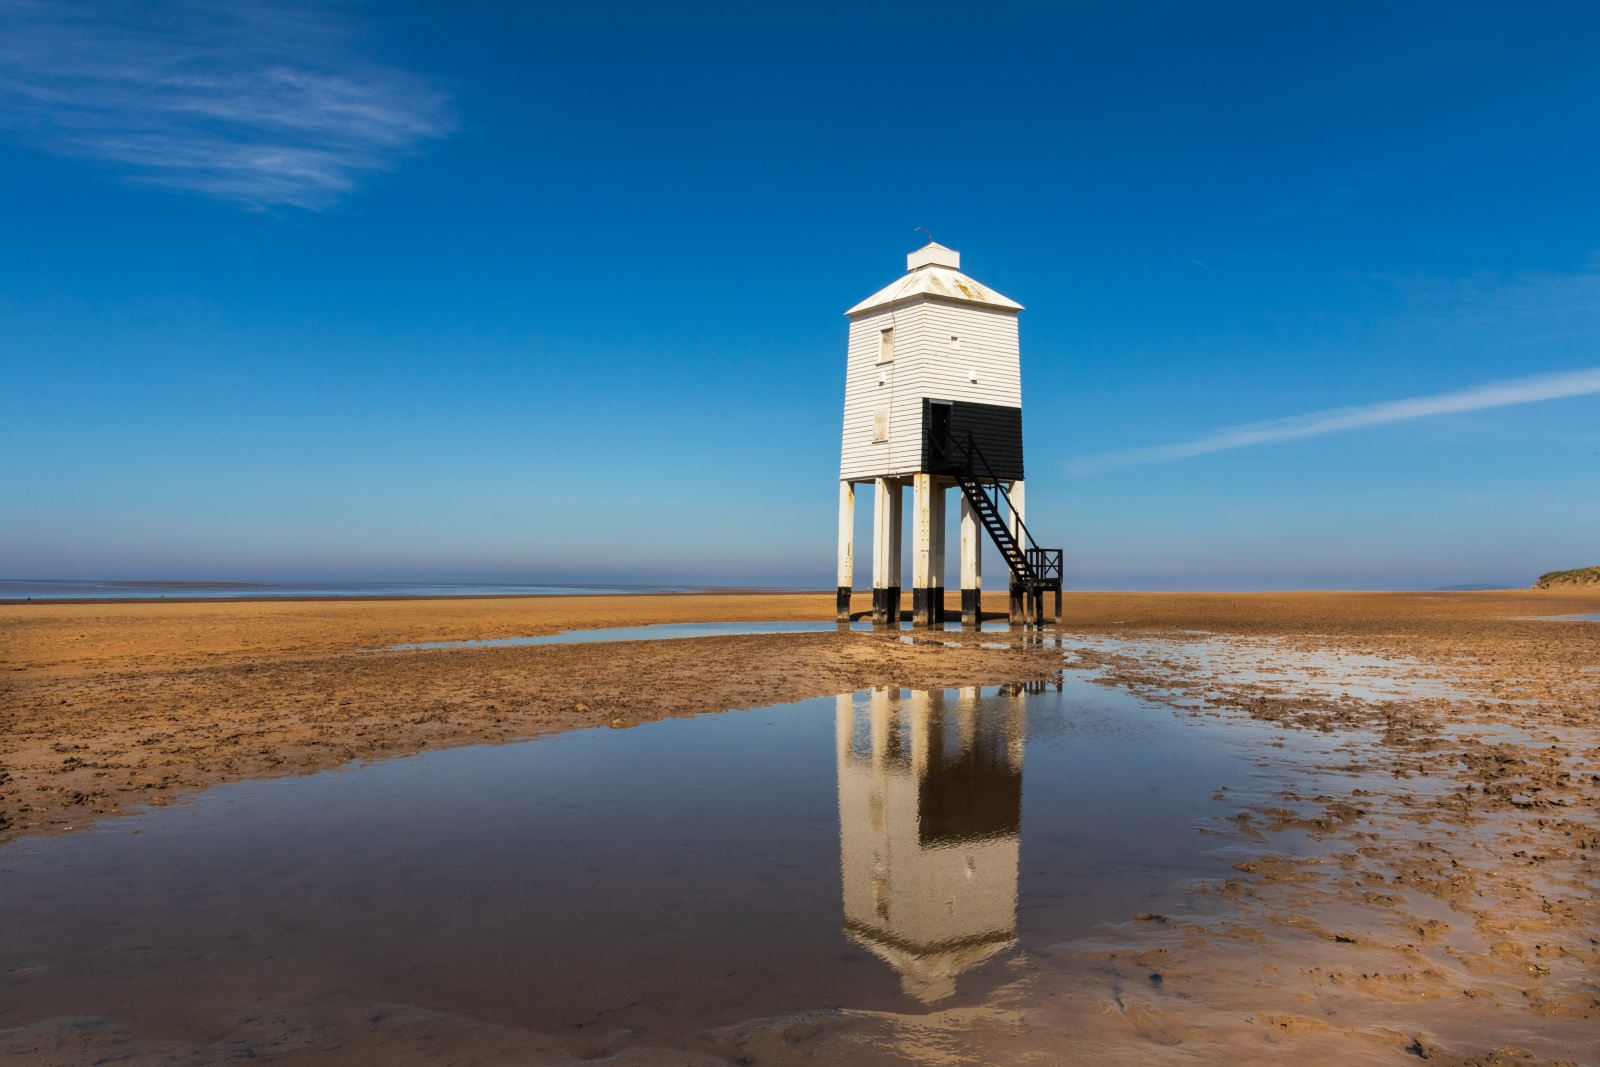 A lighthouse on stilts on a sandy beach